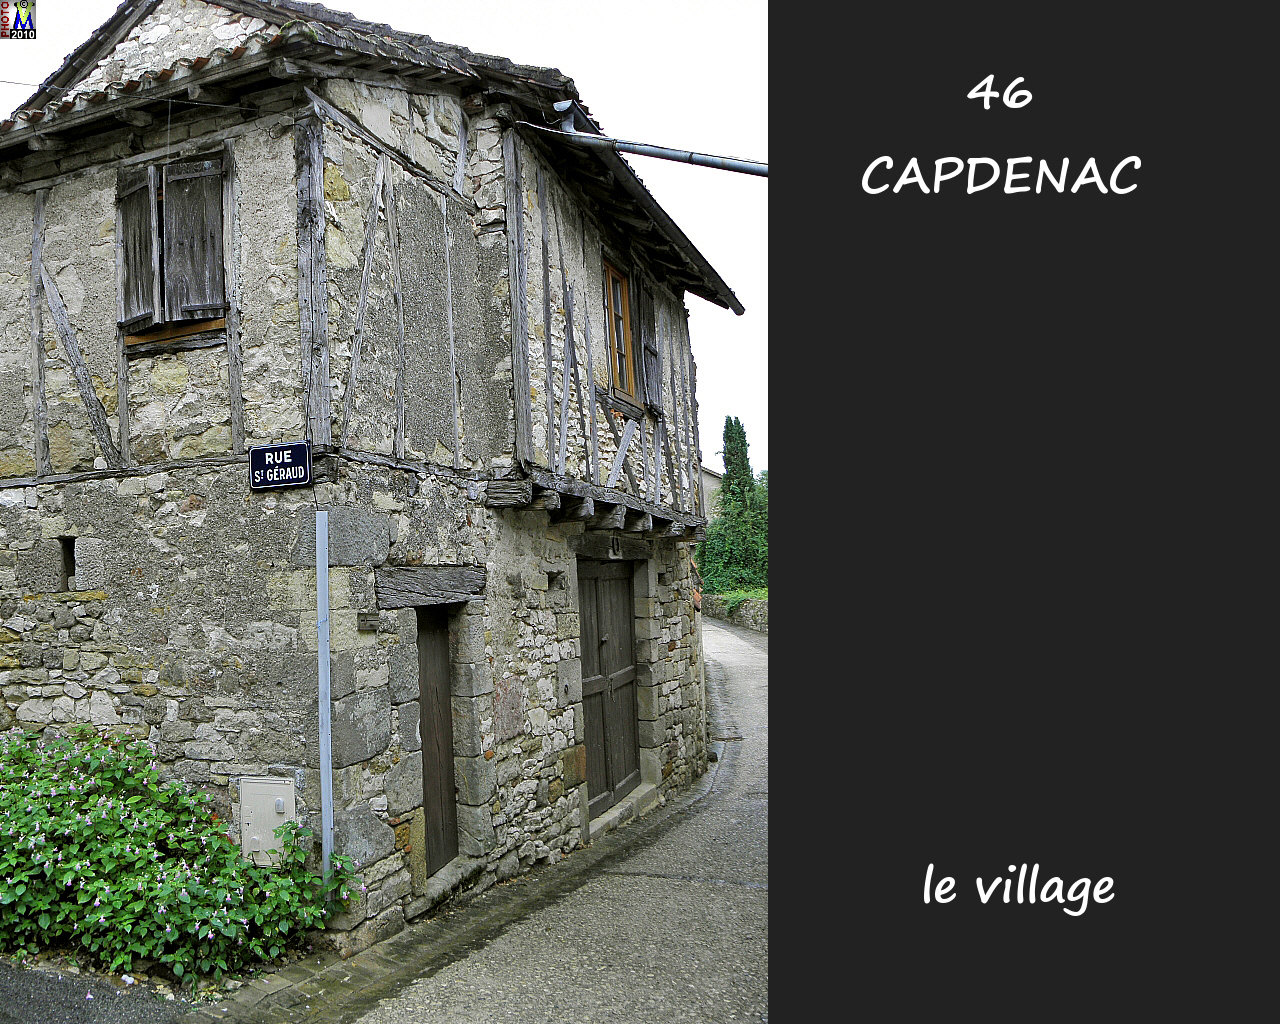 46CAPDENAC_village_146.jpg